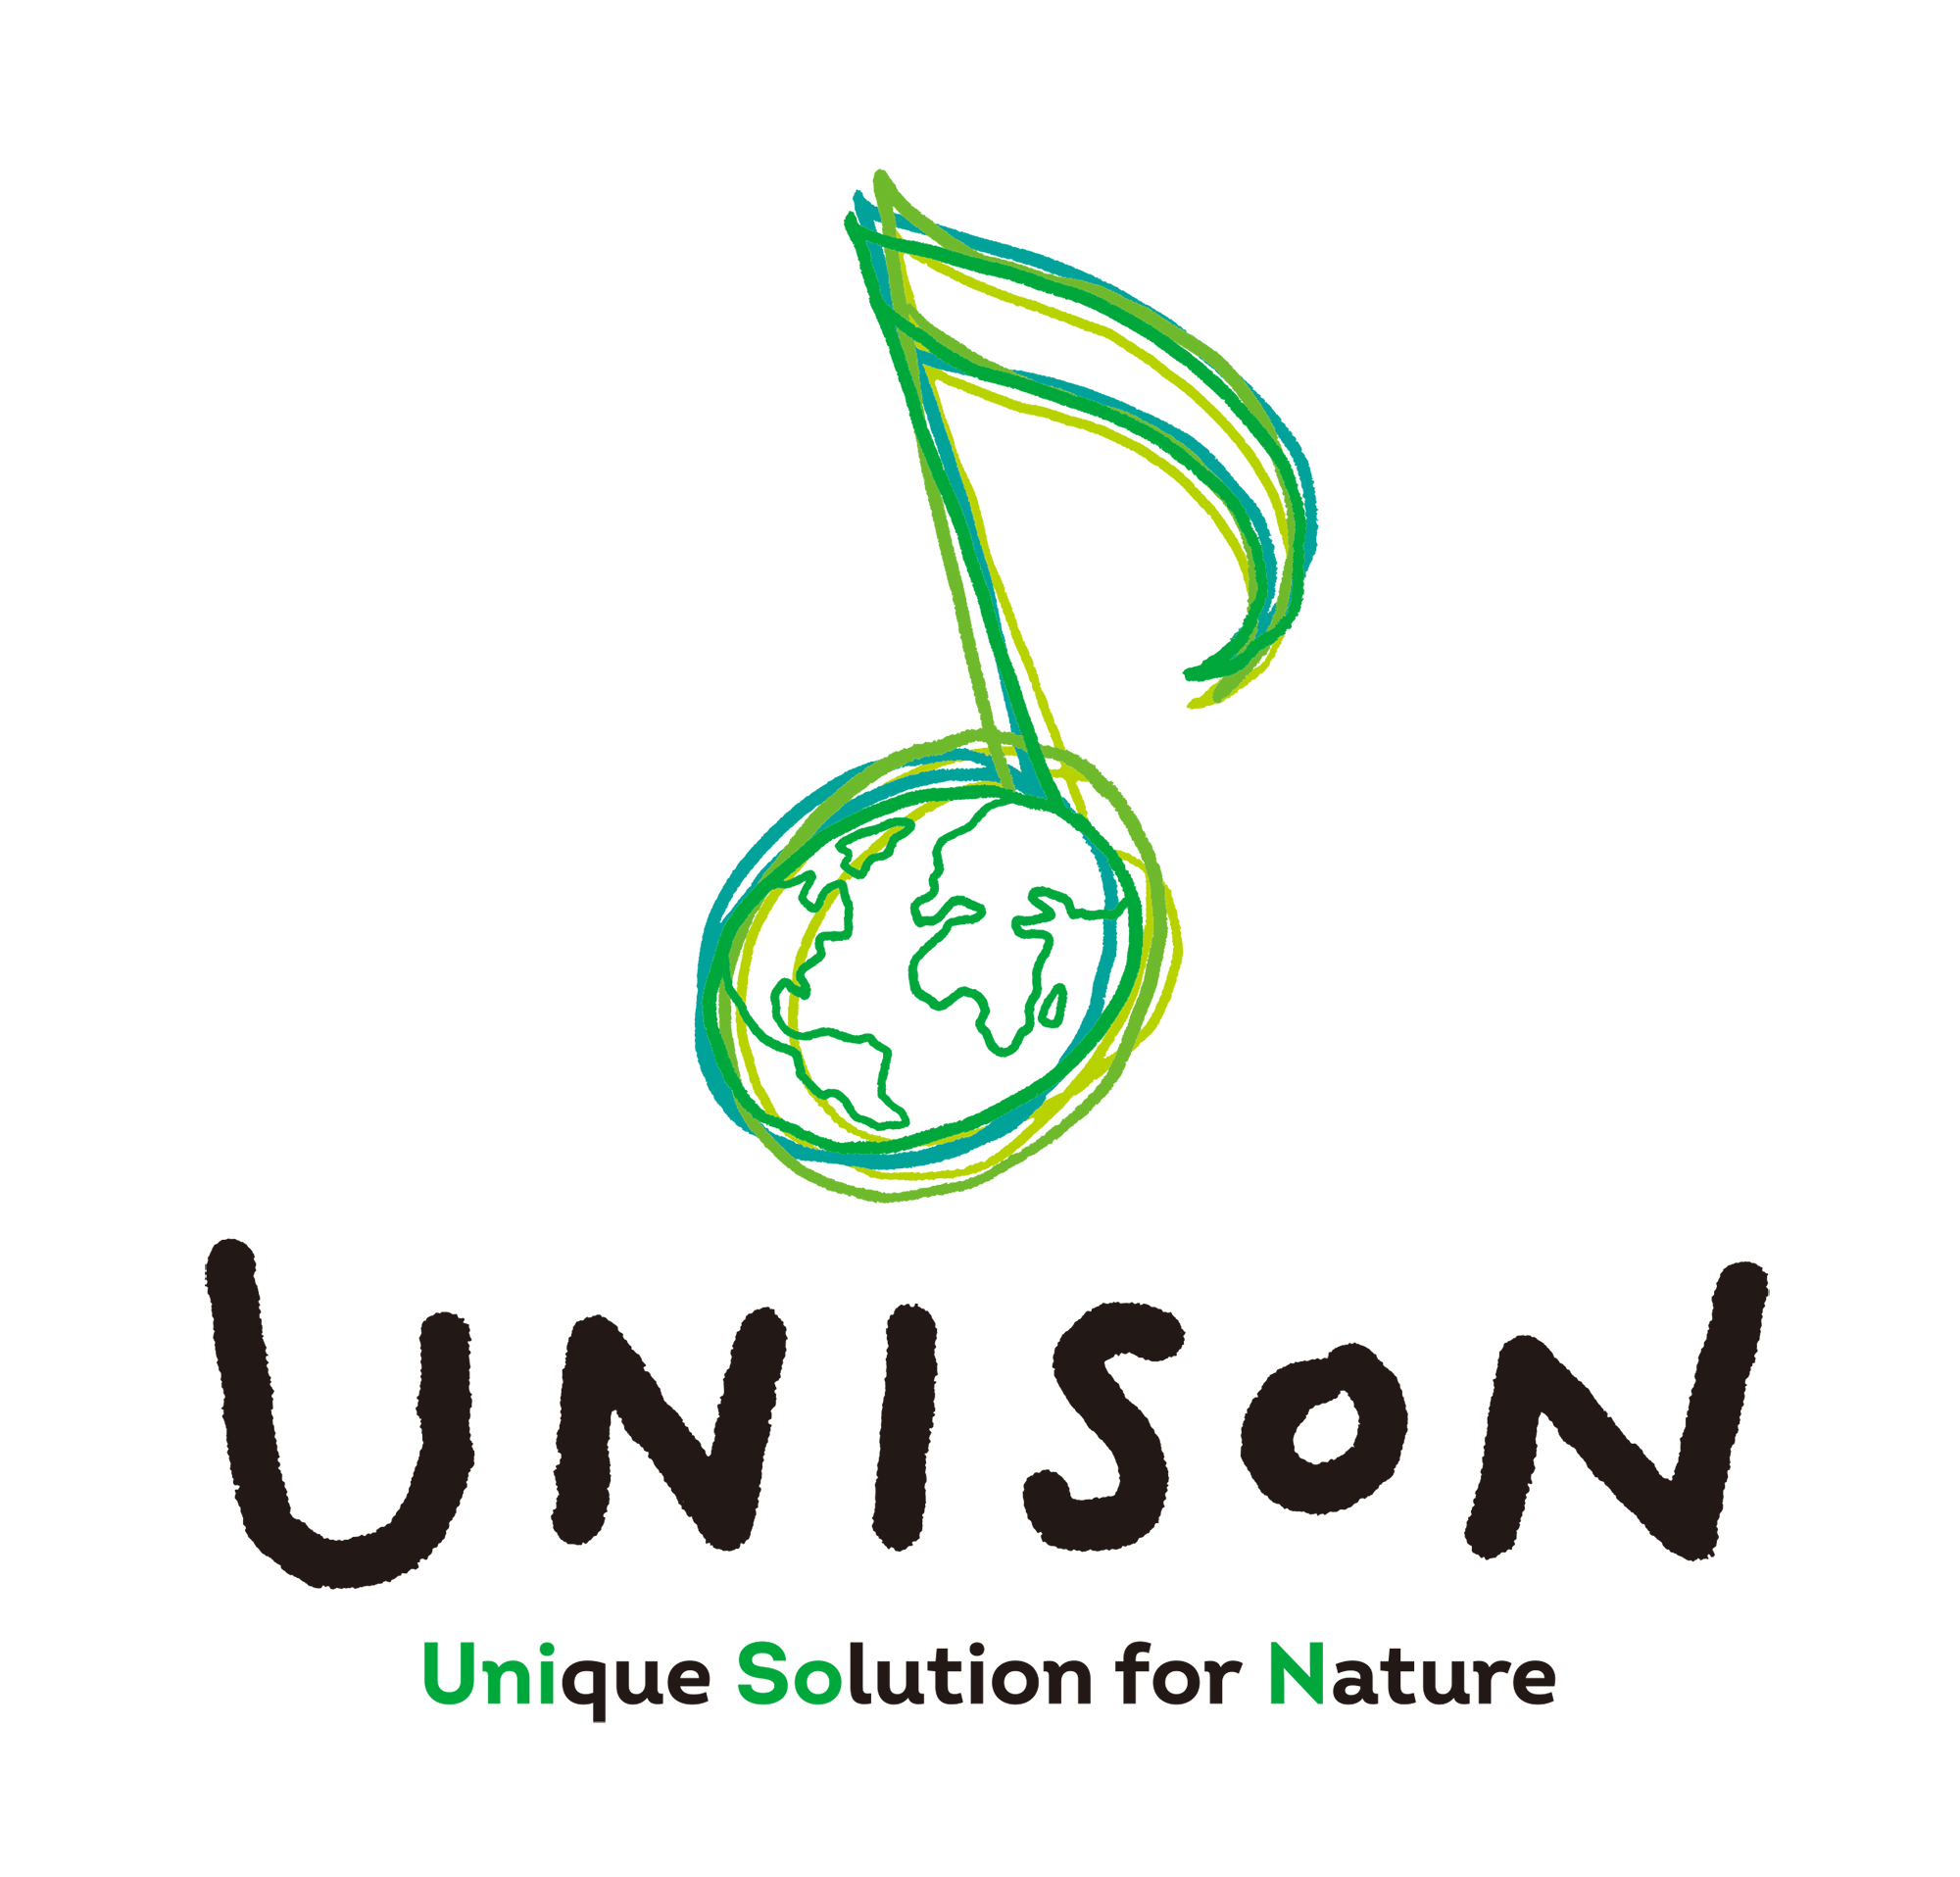 ごみを資源に変換するバイオリファイナリー事業の新ブランド 「UNISON <sup>TM</sup>」を立ち上げ